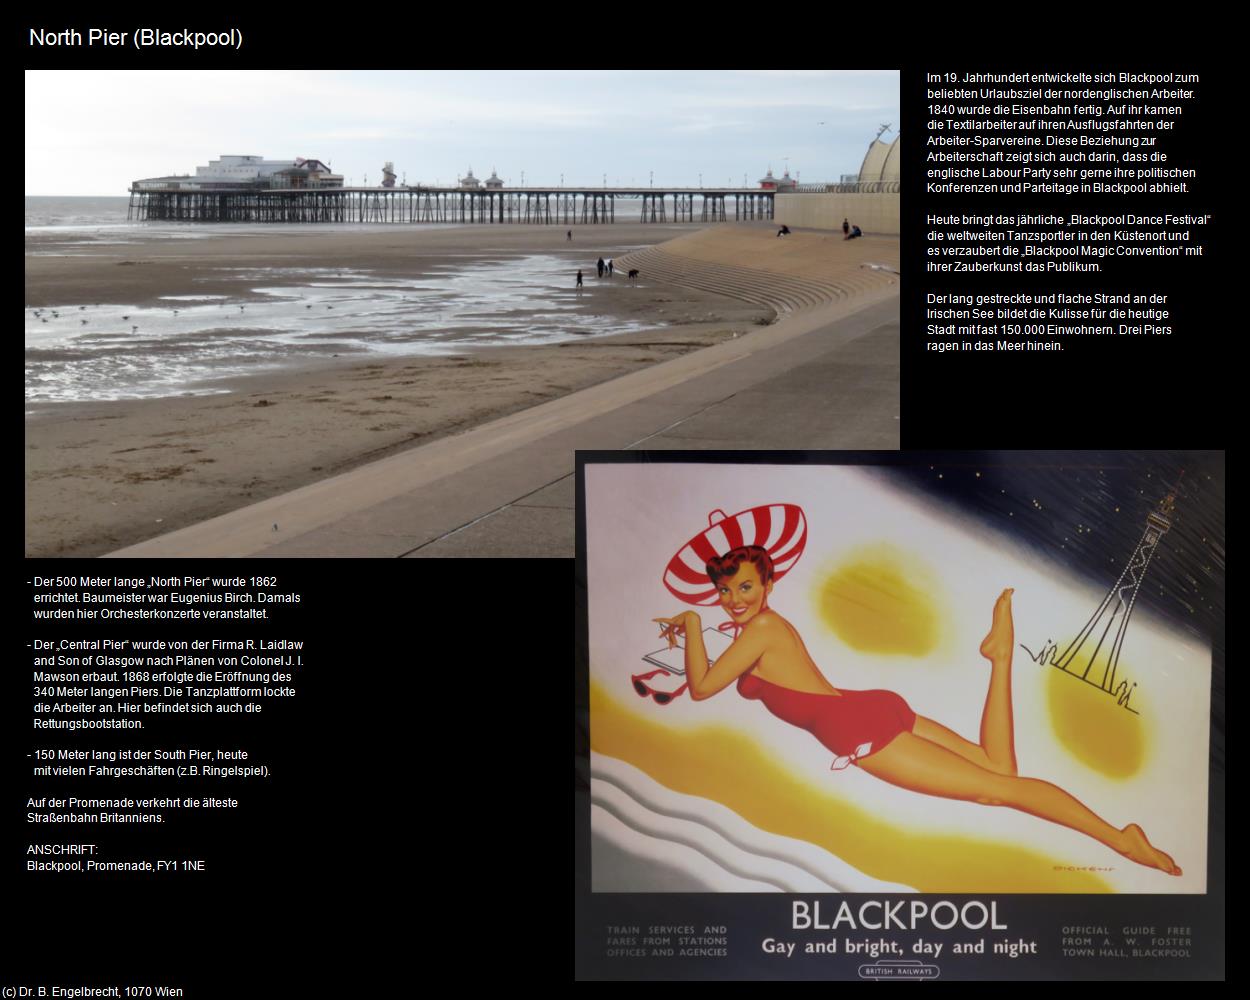 North Pier  (Blackpool, England ) in Kulturatlas-ENGLAND und WALES